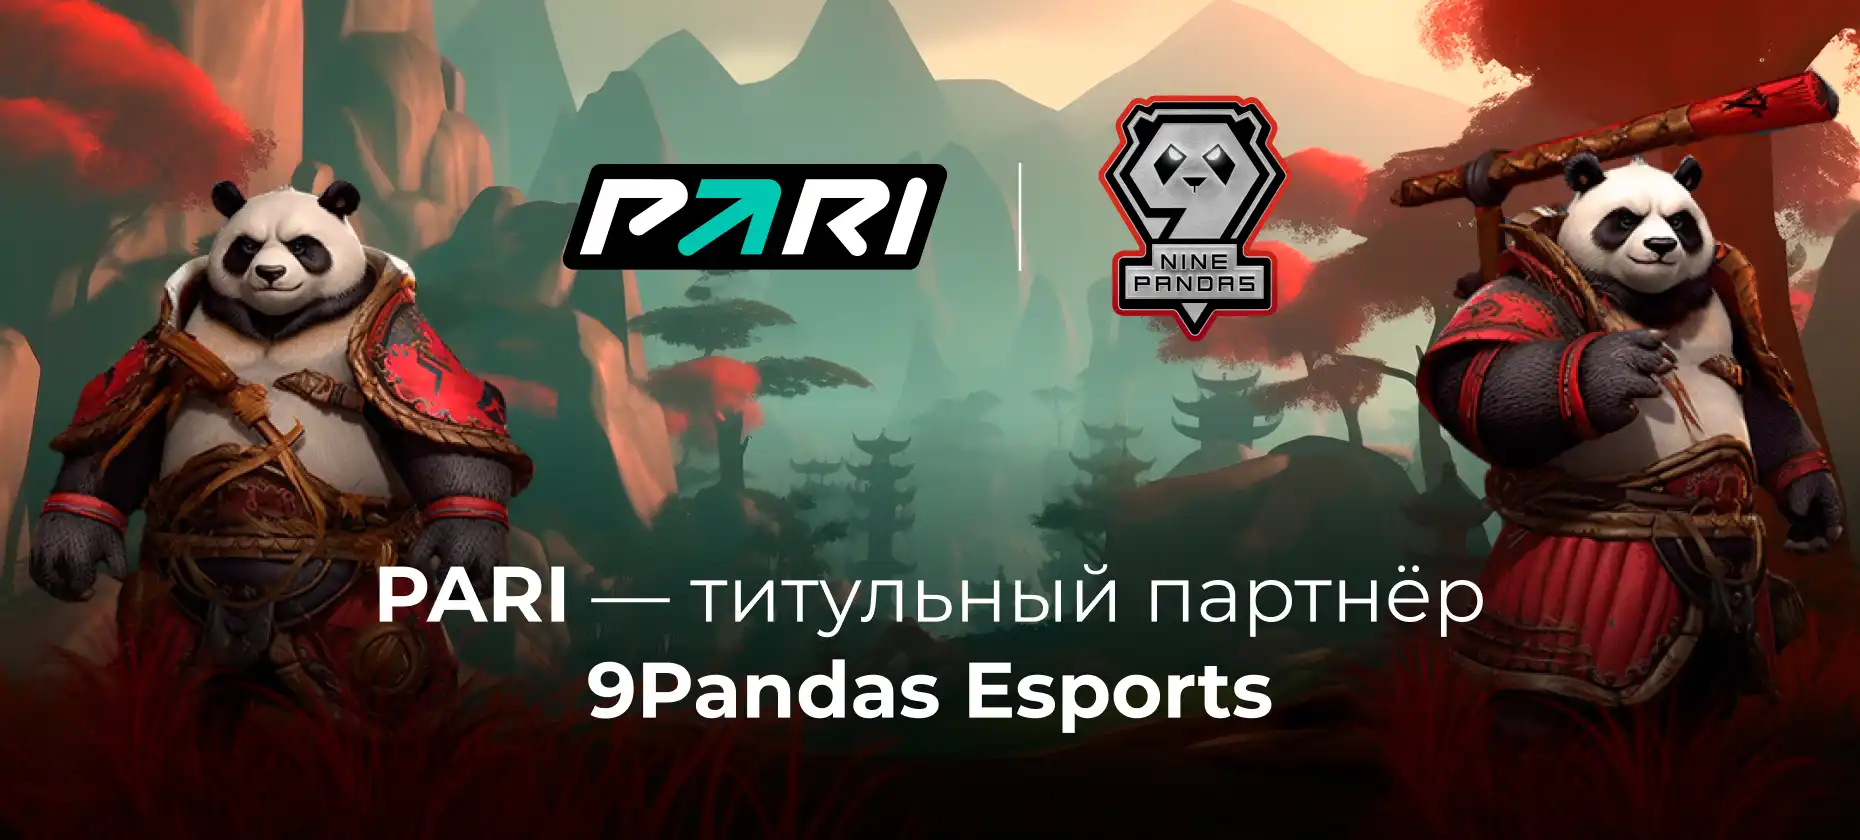 PARI стала титульным партнером команды 9Pandas Esports по Dota 2